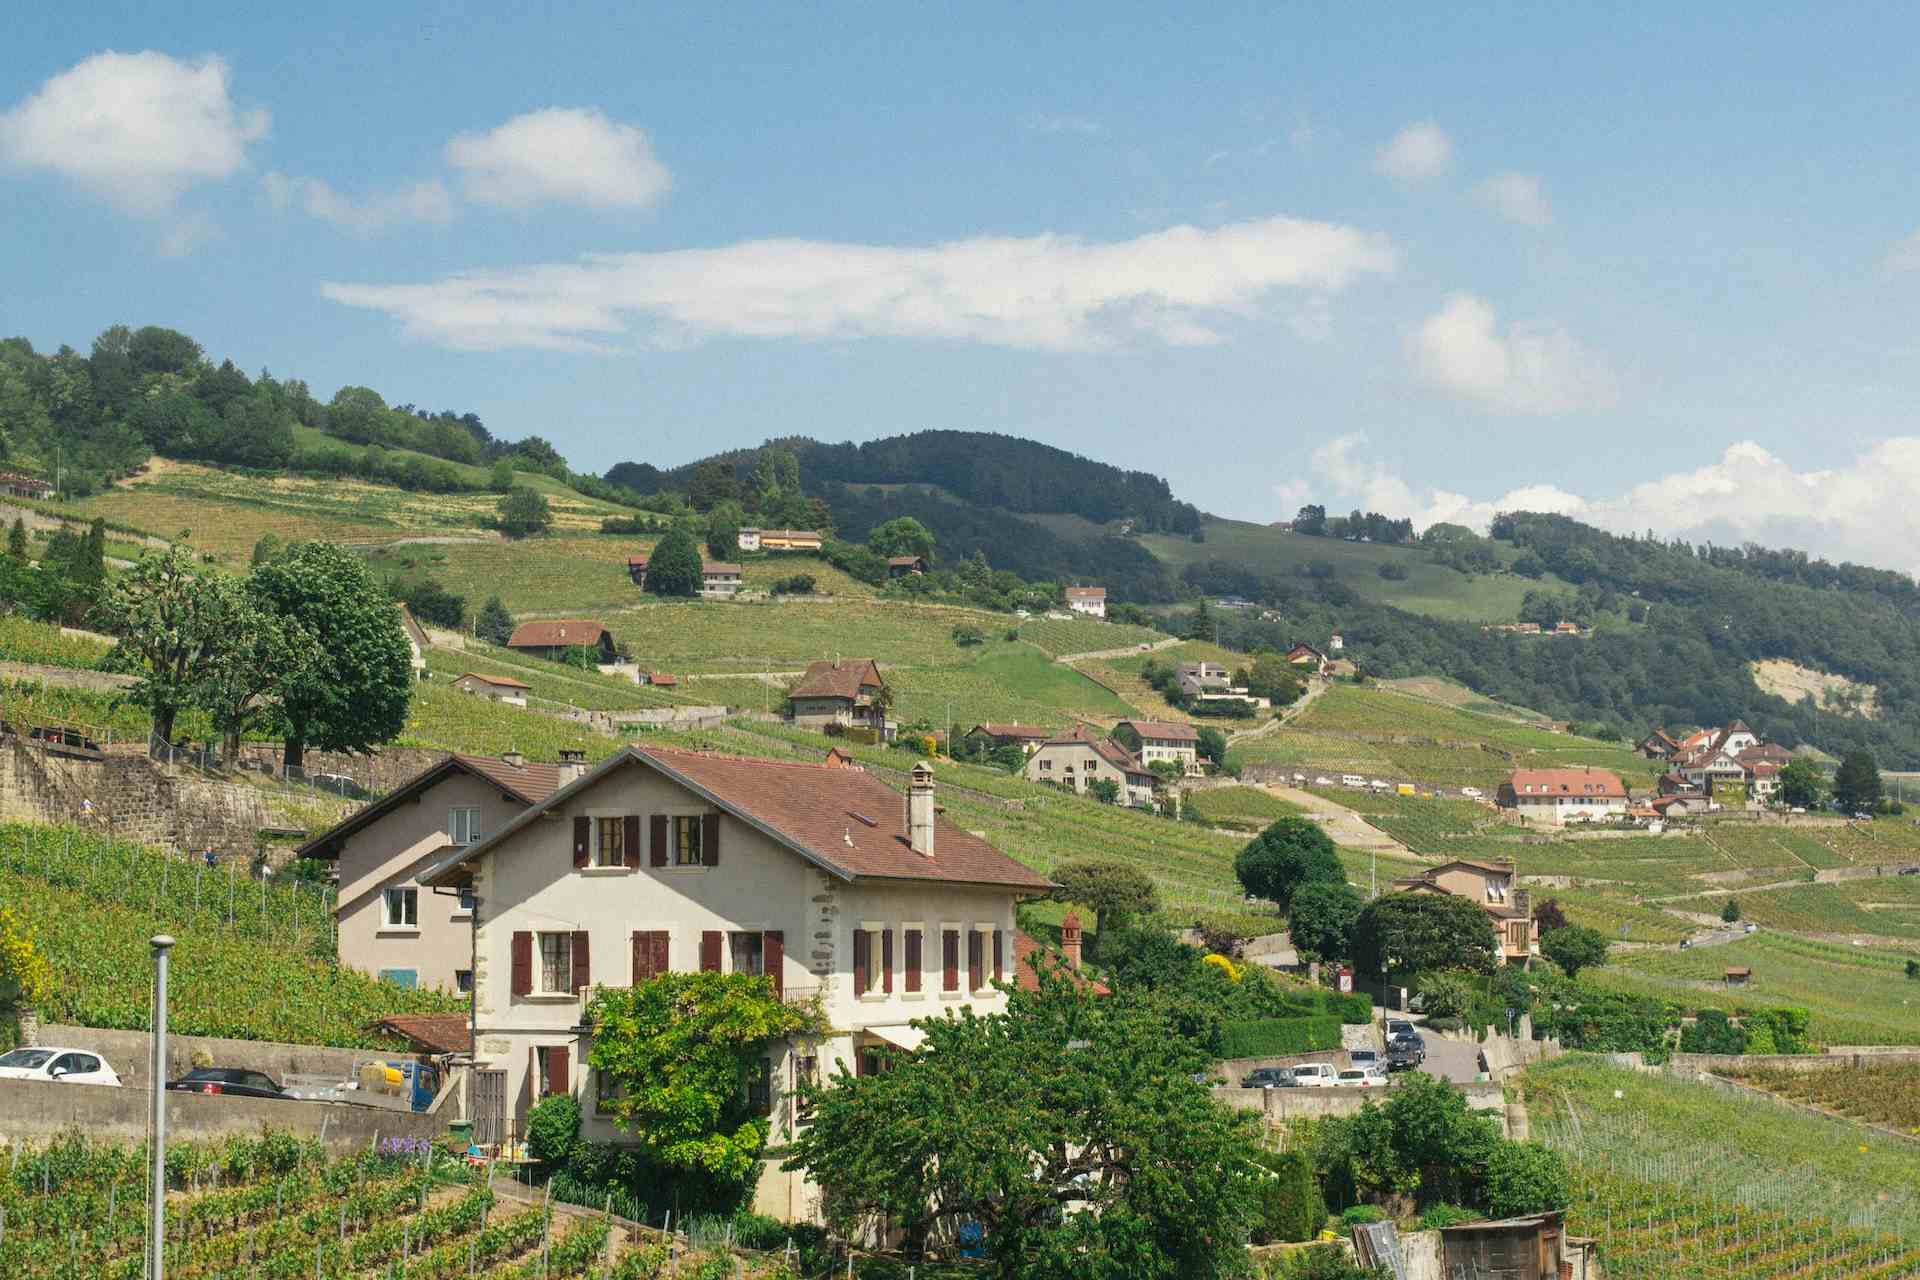 La Ferme des Collines, producer in Mont-la-ville canton of Vaud in Switzerland, | Mimelis